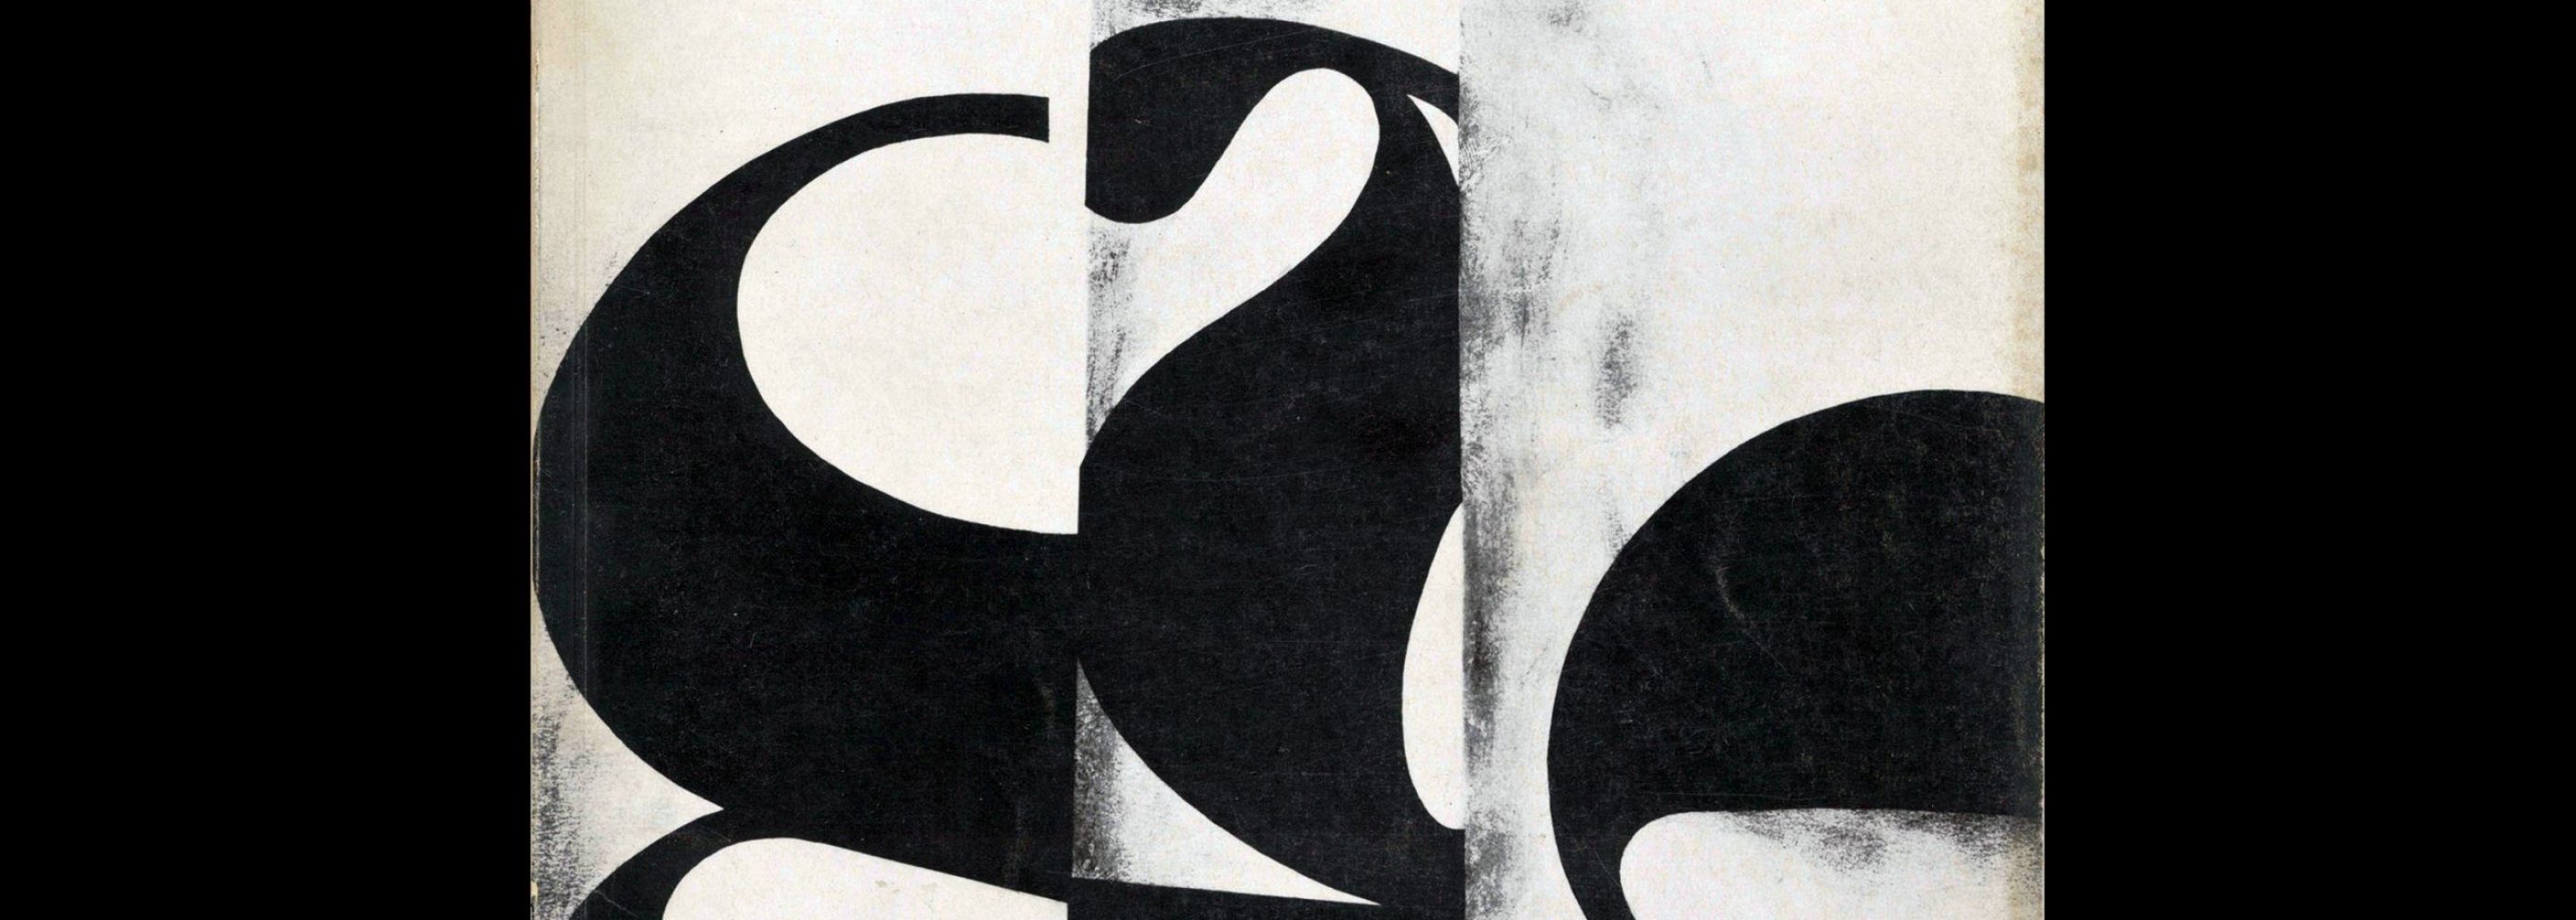 Gebrauchsgraphik, 1, 1966. Cover design by Rudolf Huber-Wilkoff